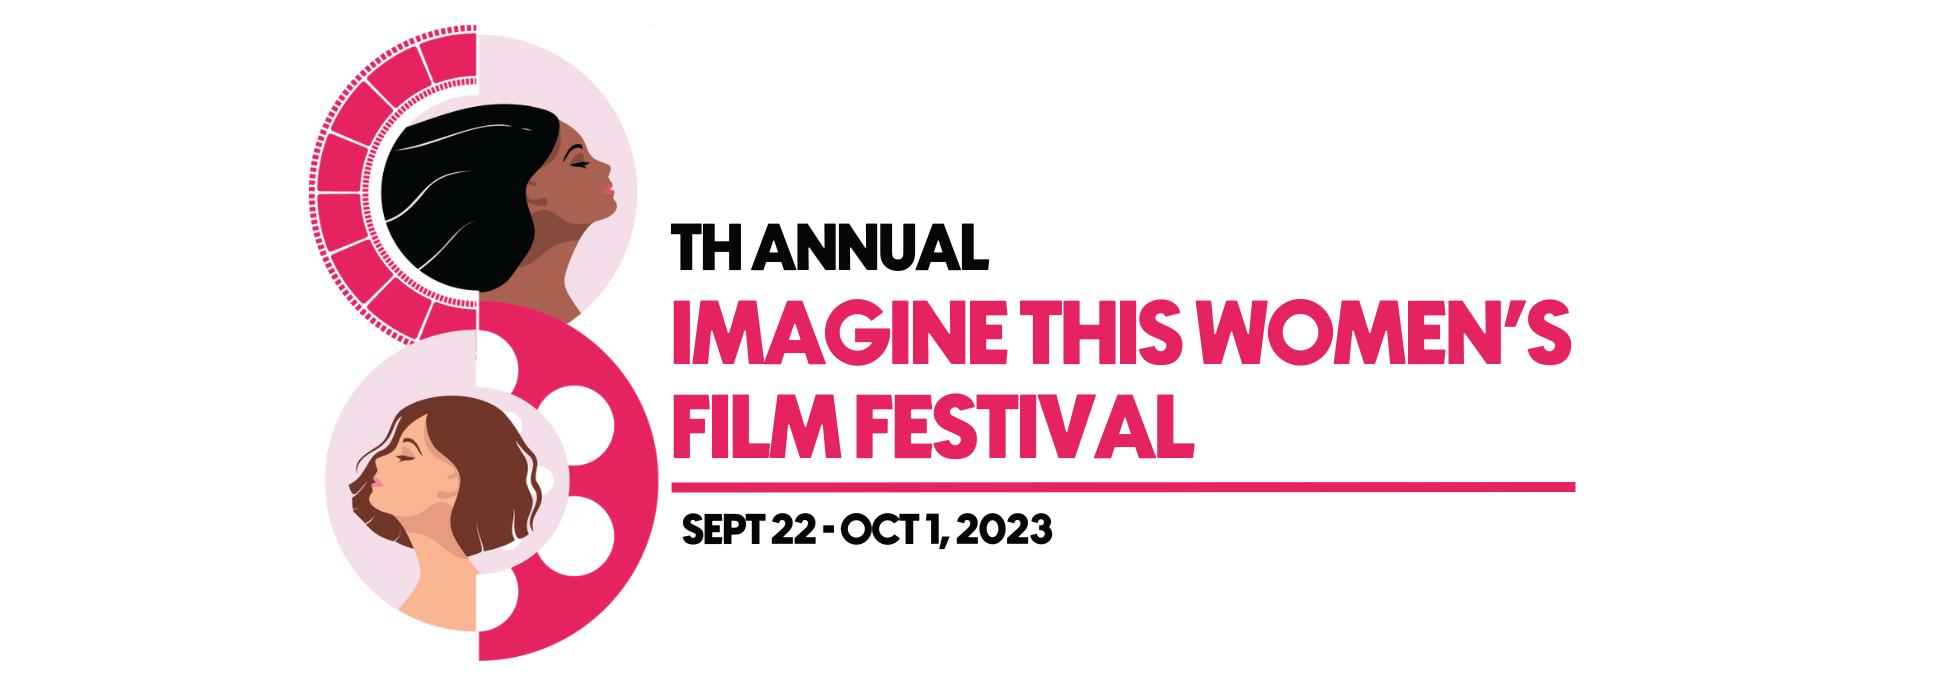 Imagine This Women's Film Festival 2023